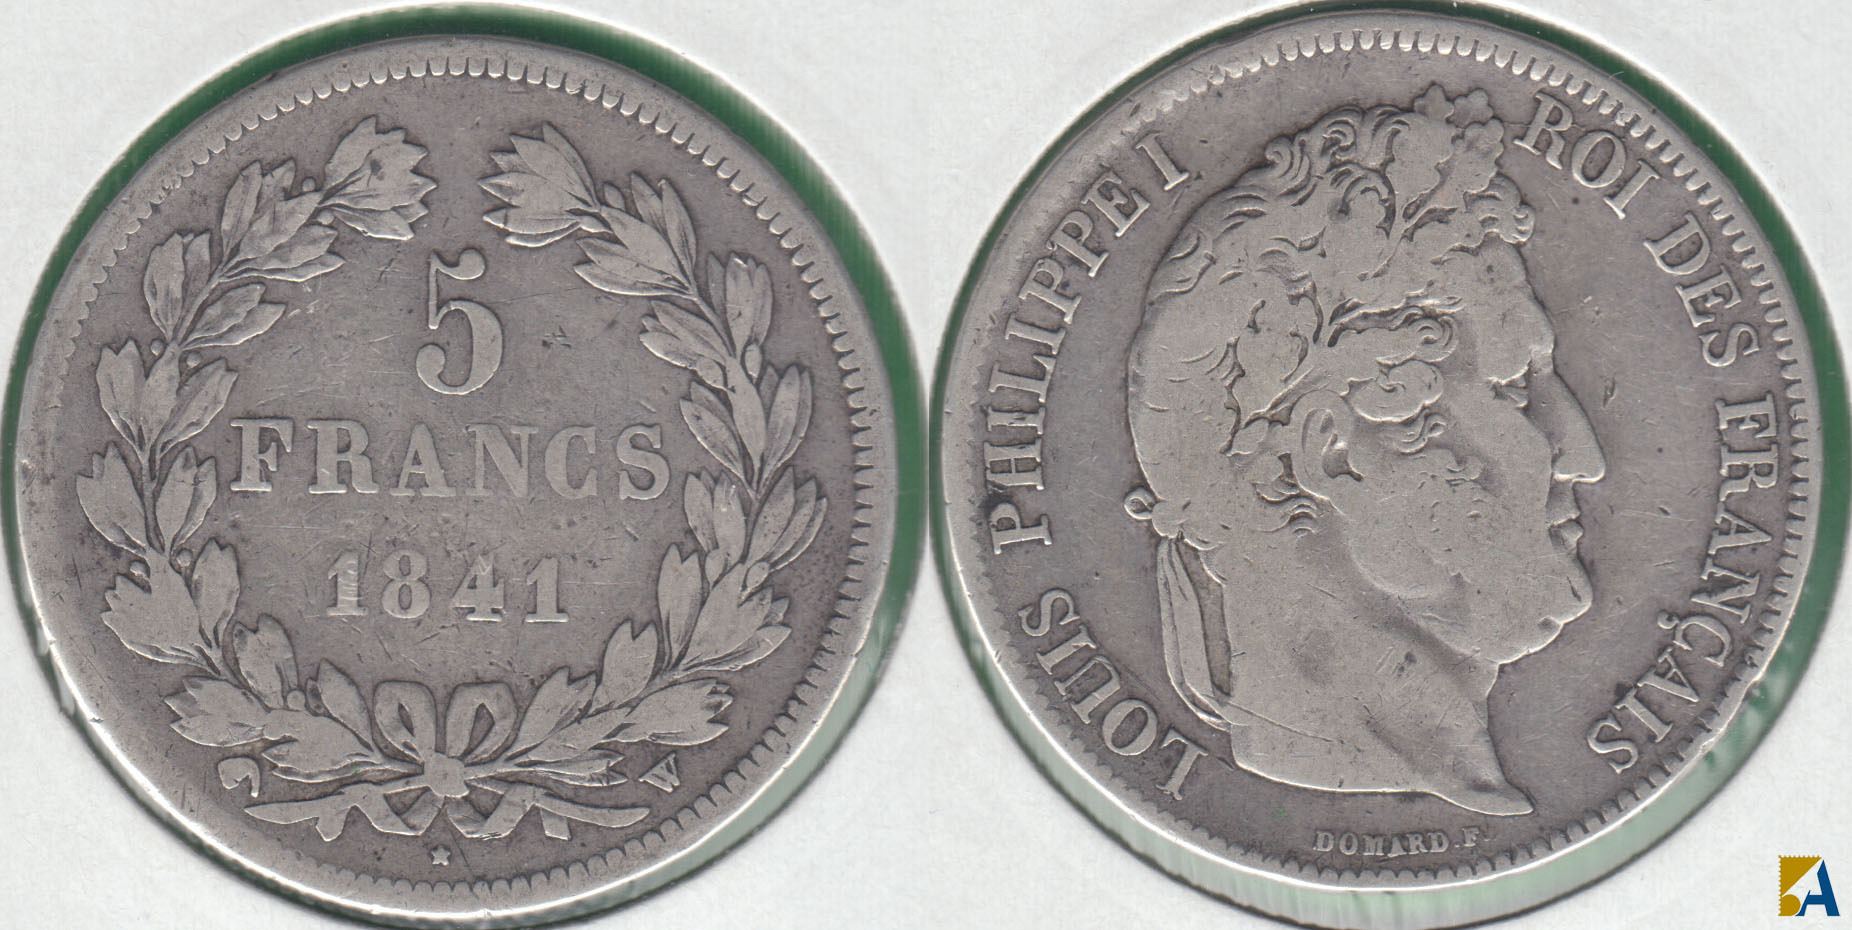 FRANCIA - FRANCE. 5 FRANCOS (FRANCS) DE 1841 W. PLATA 0.900.